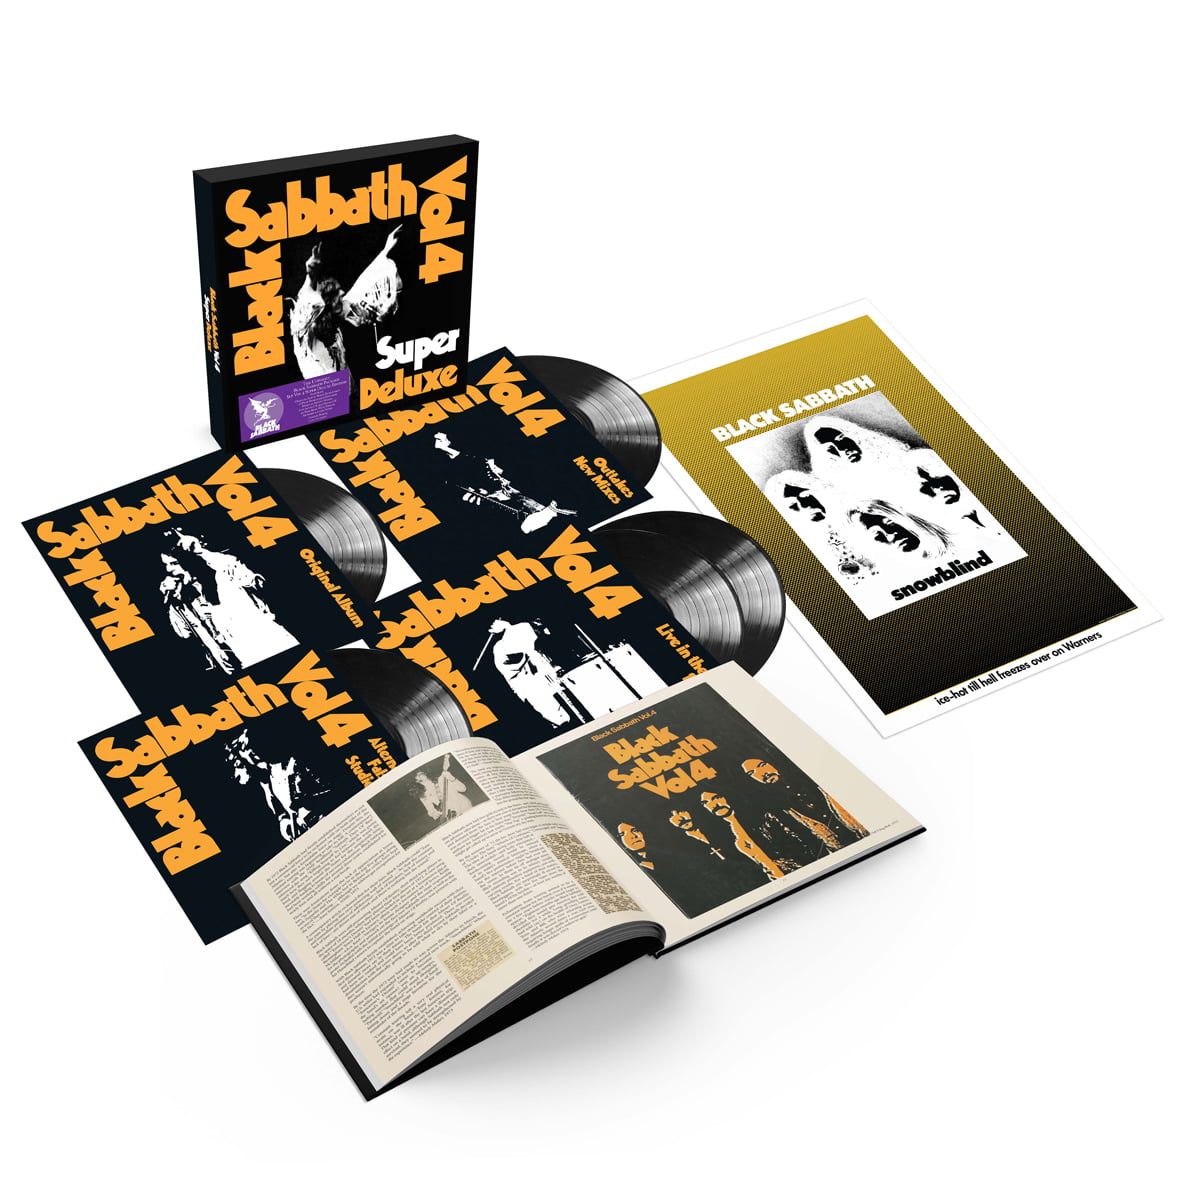 Black Sabbath - Vol. 4 Super Deluxe 5LP Boxset